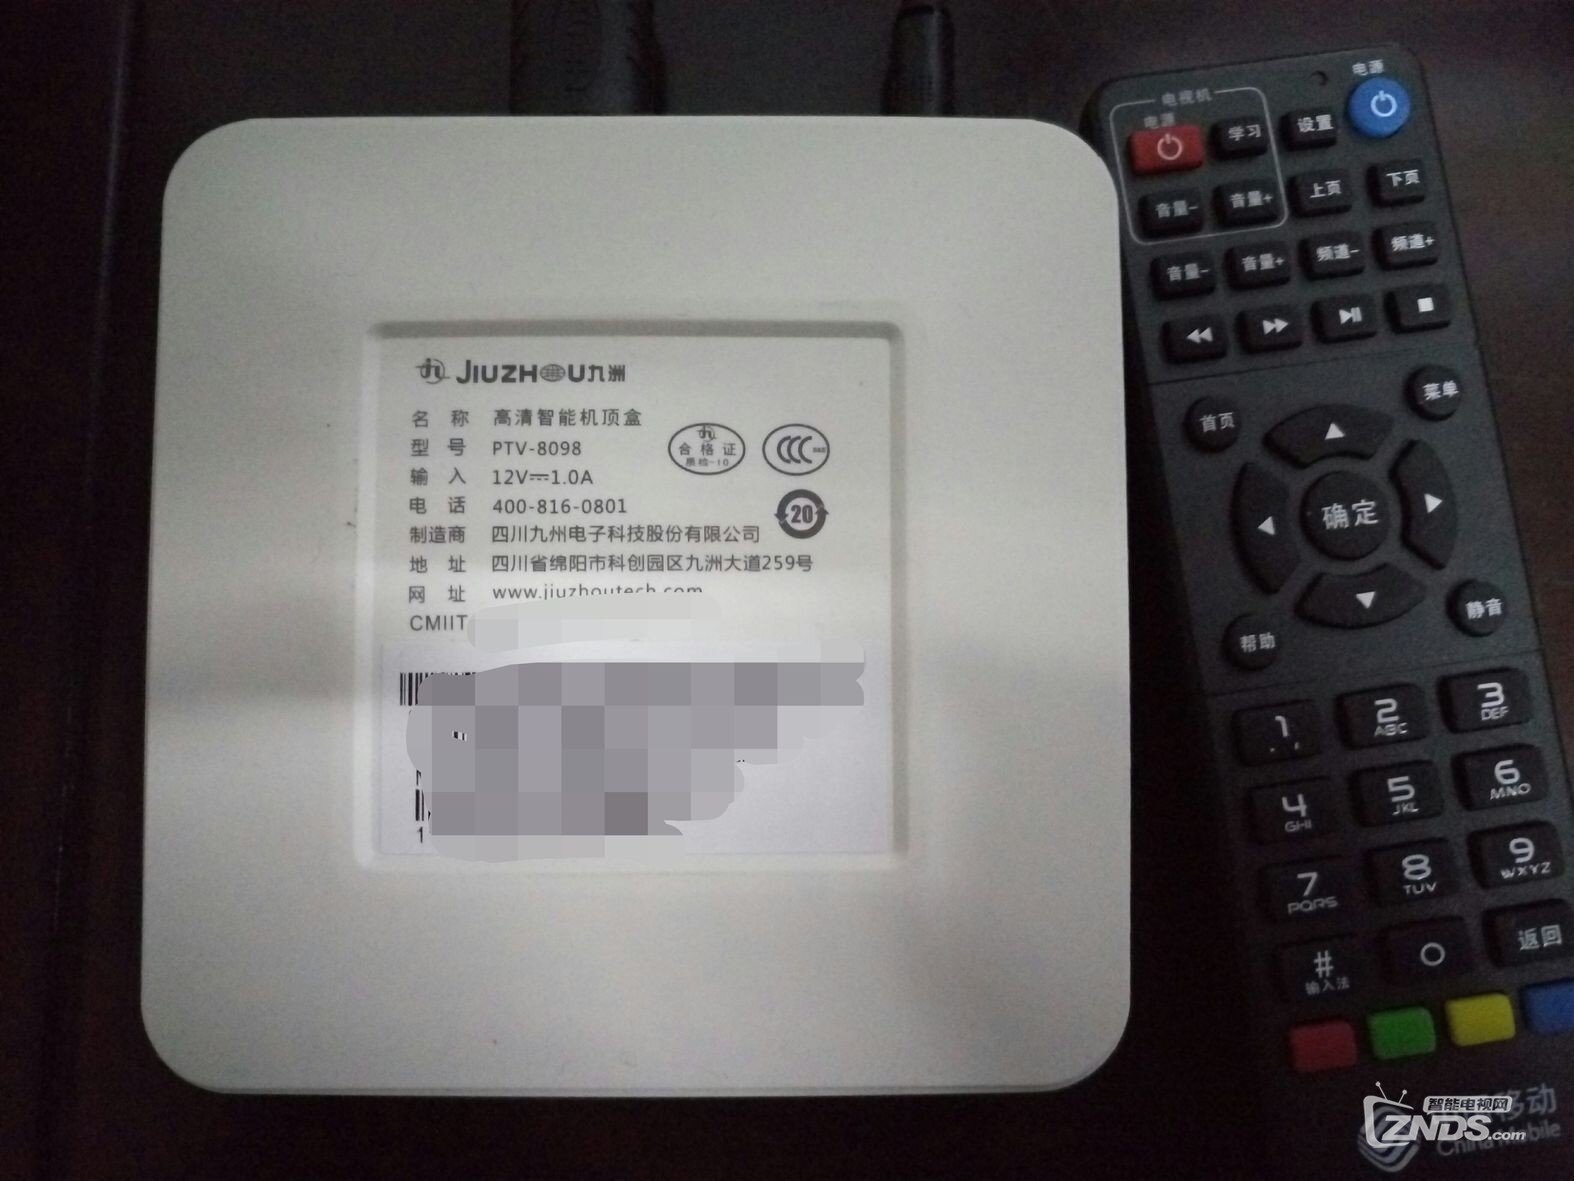 九洲8098机顶盒成功安装其他APP_中国移动魔